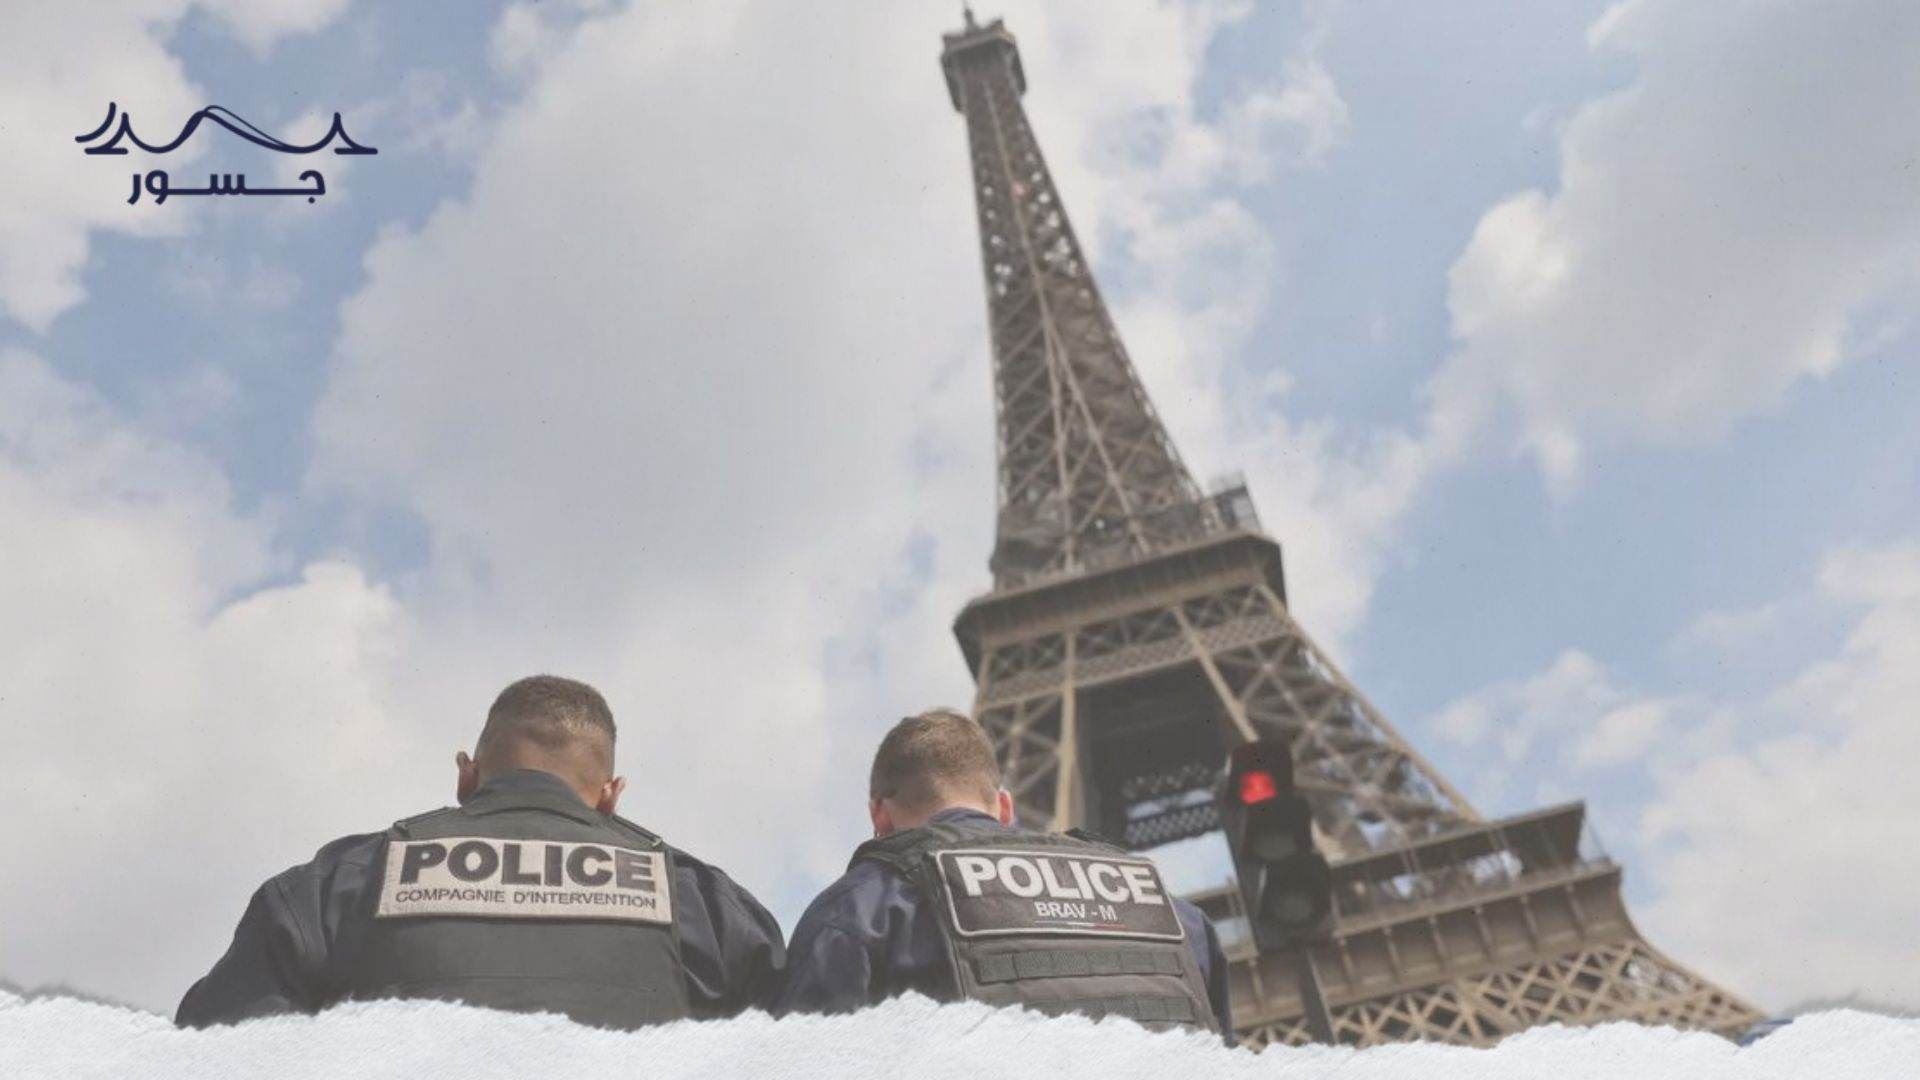 تصاعد التهديدات الإرهابية في أوروبا وأهمية الدور الفرنسي